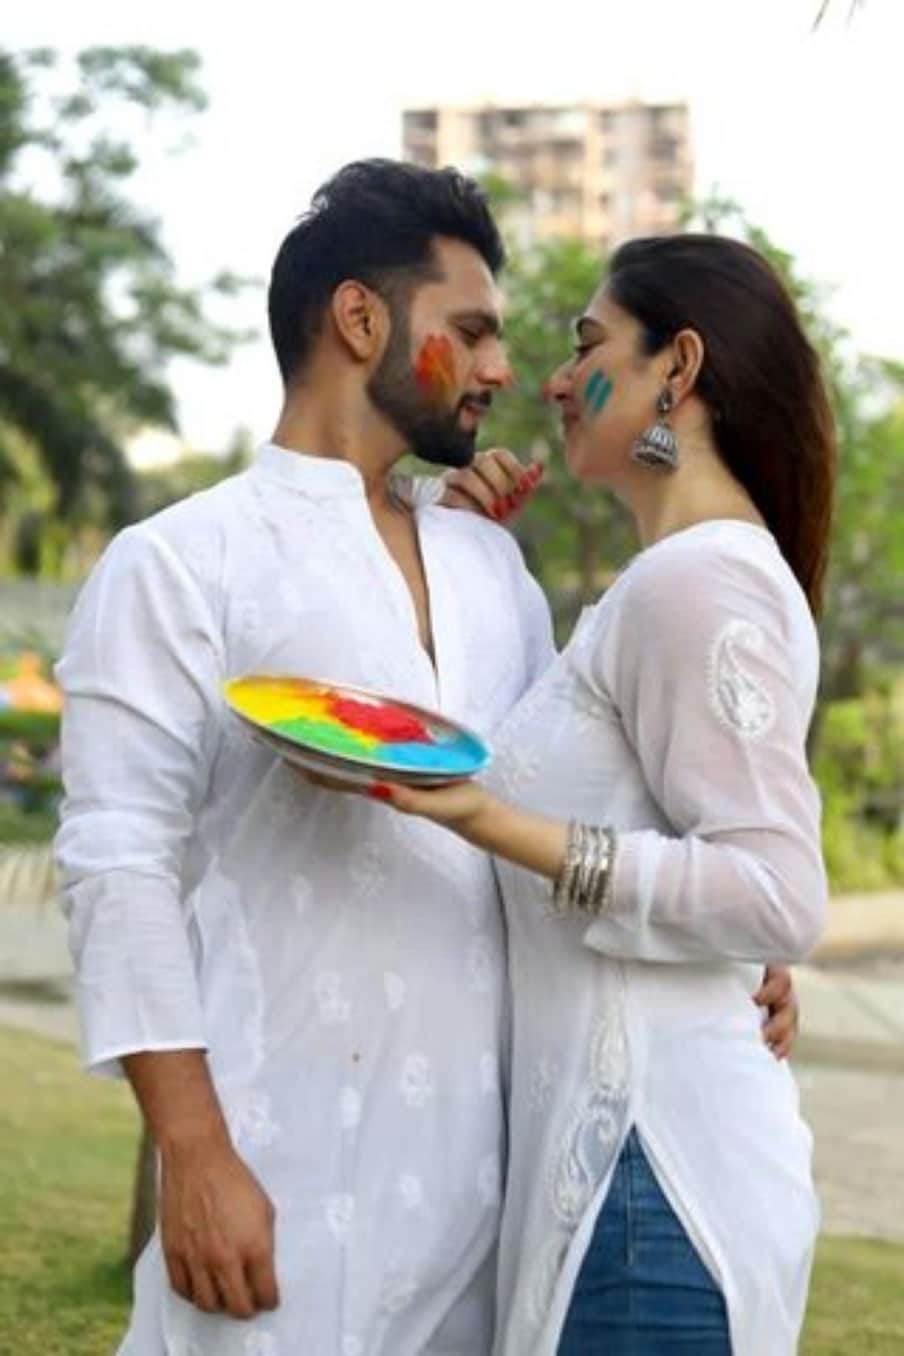  इन तस्वीरों में रंगों में रंगे दिशा परमार और राहुल वैद्य एक दूसरे के प्यार में डूबे नजर आ रहे हैं. (photo credit: instagram/@rahulvaidyarkv)